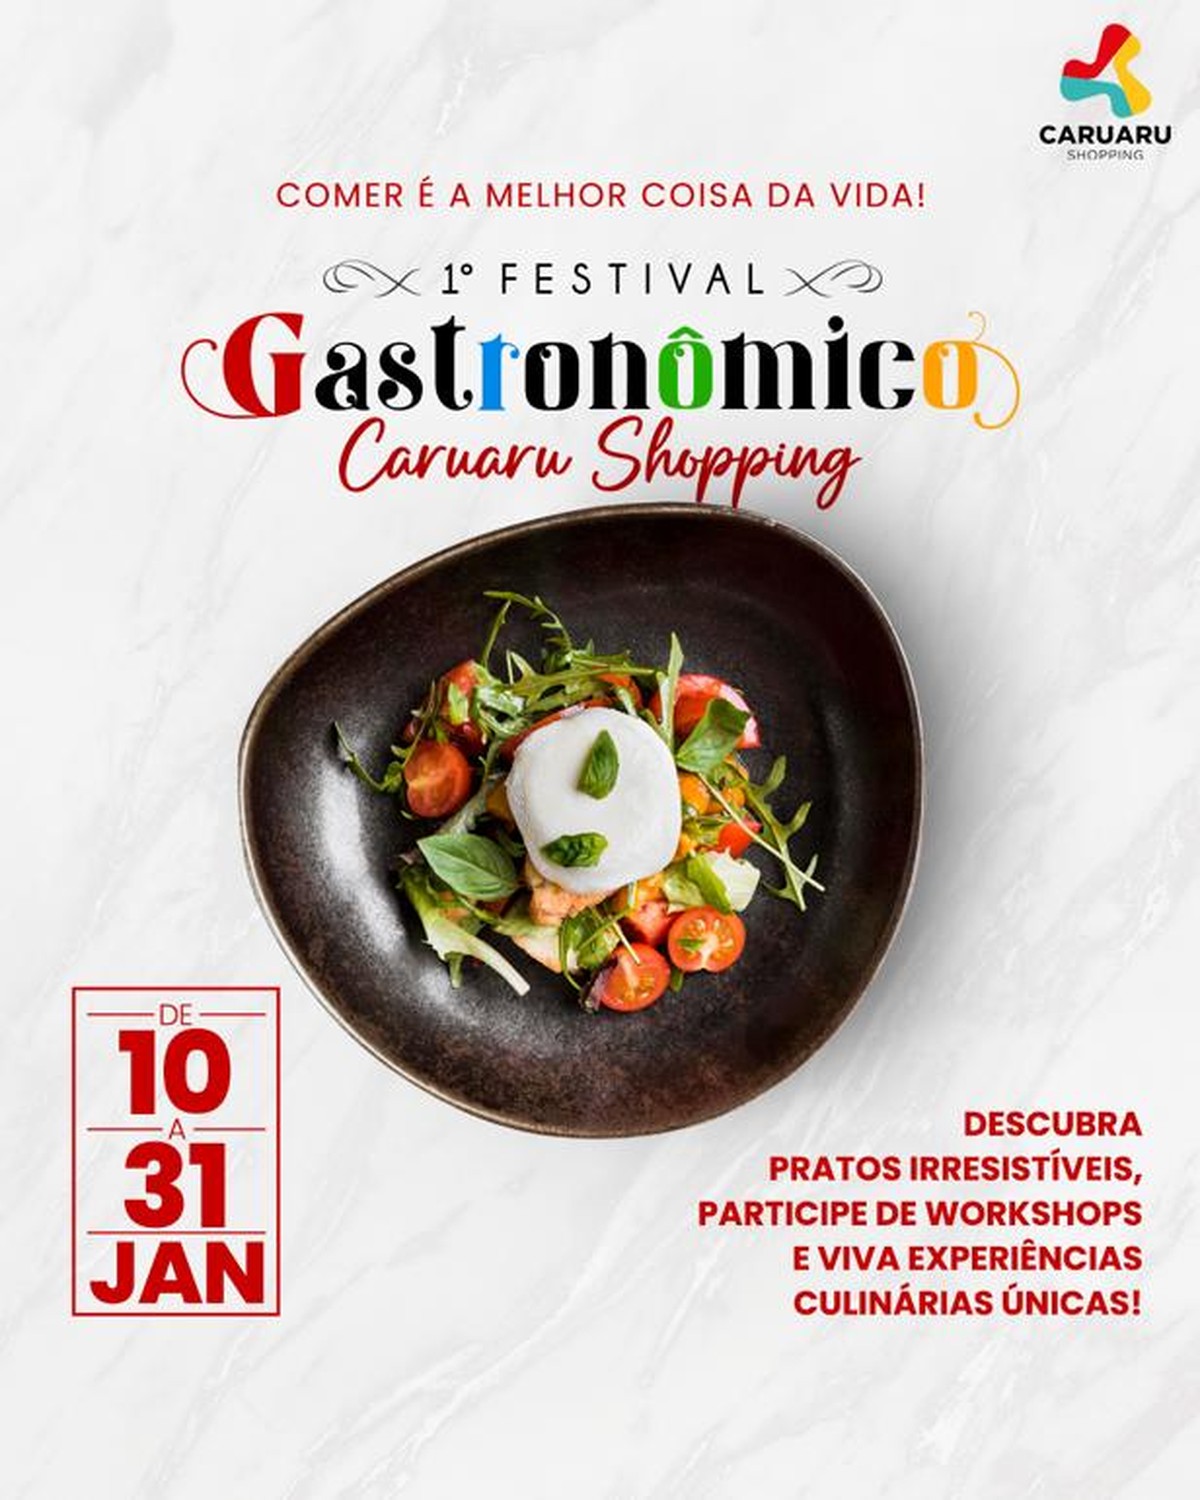 Confira programação do 1º Festival Gastronômico de Caruaru